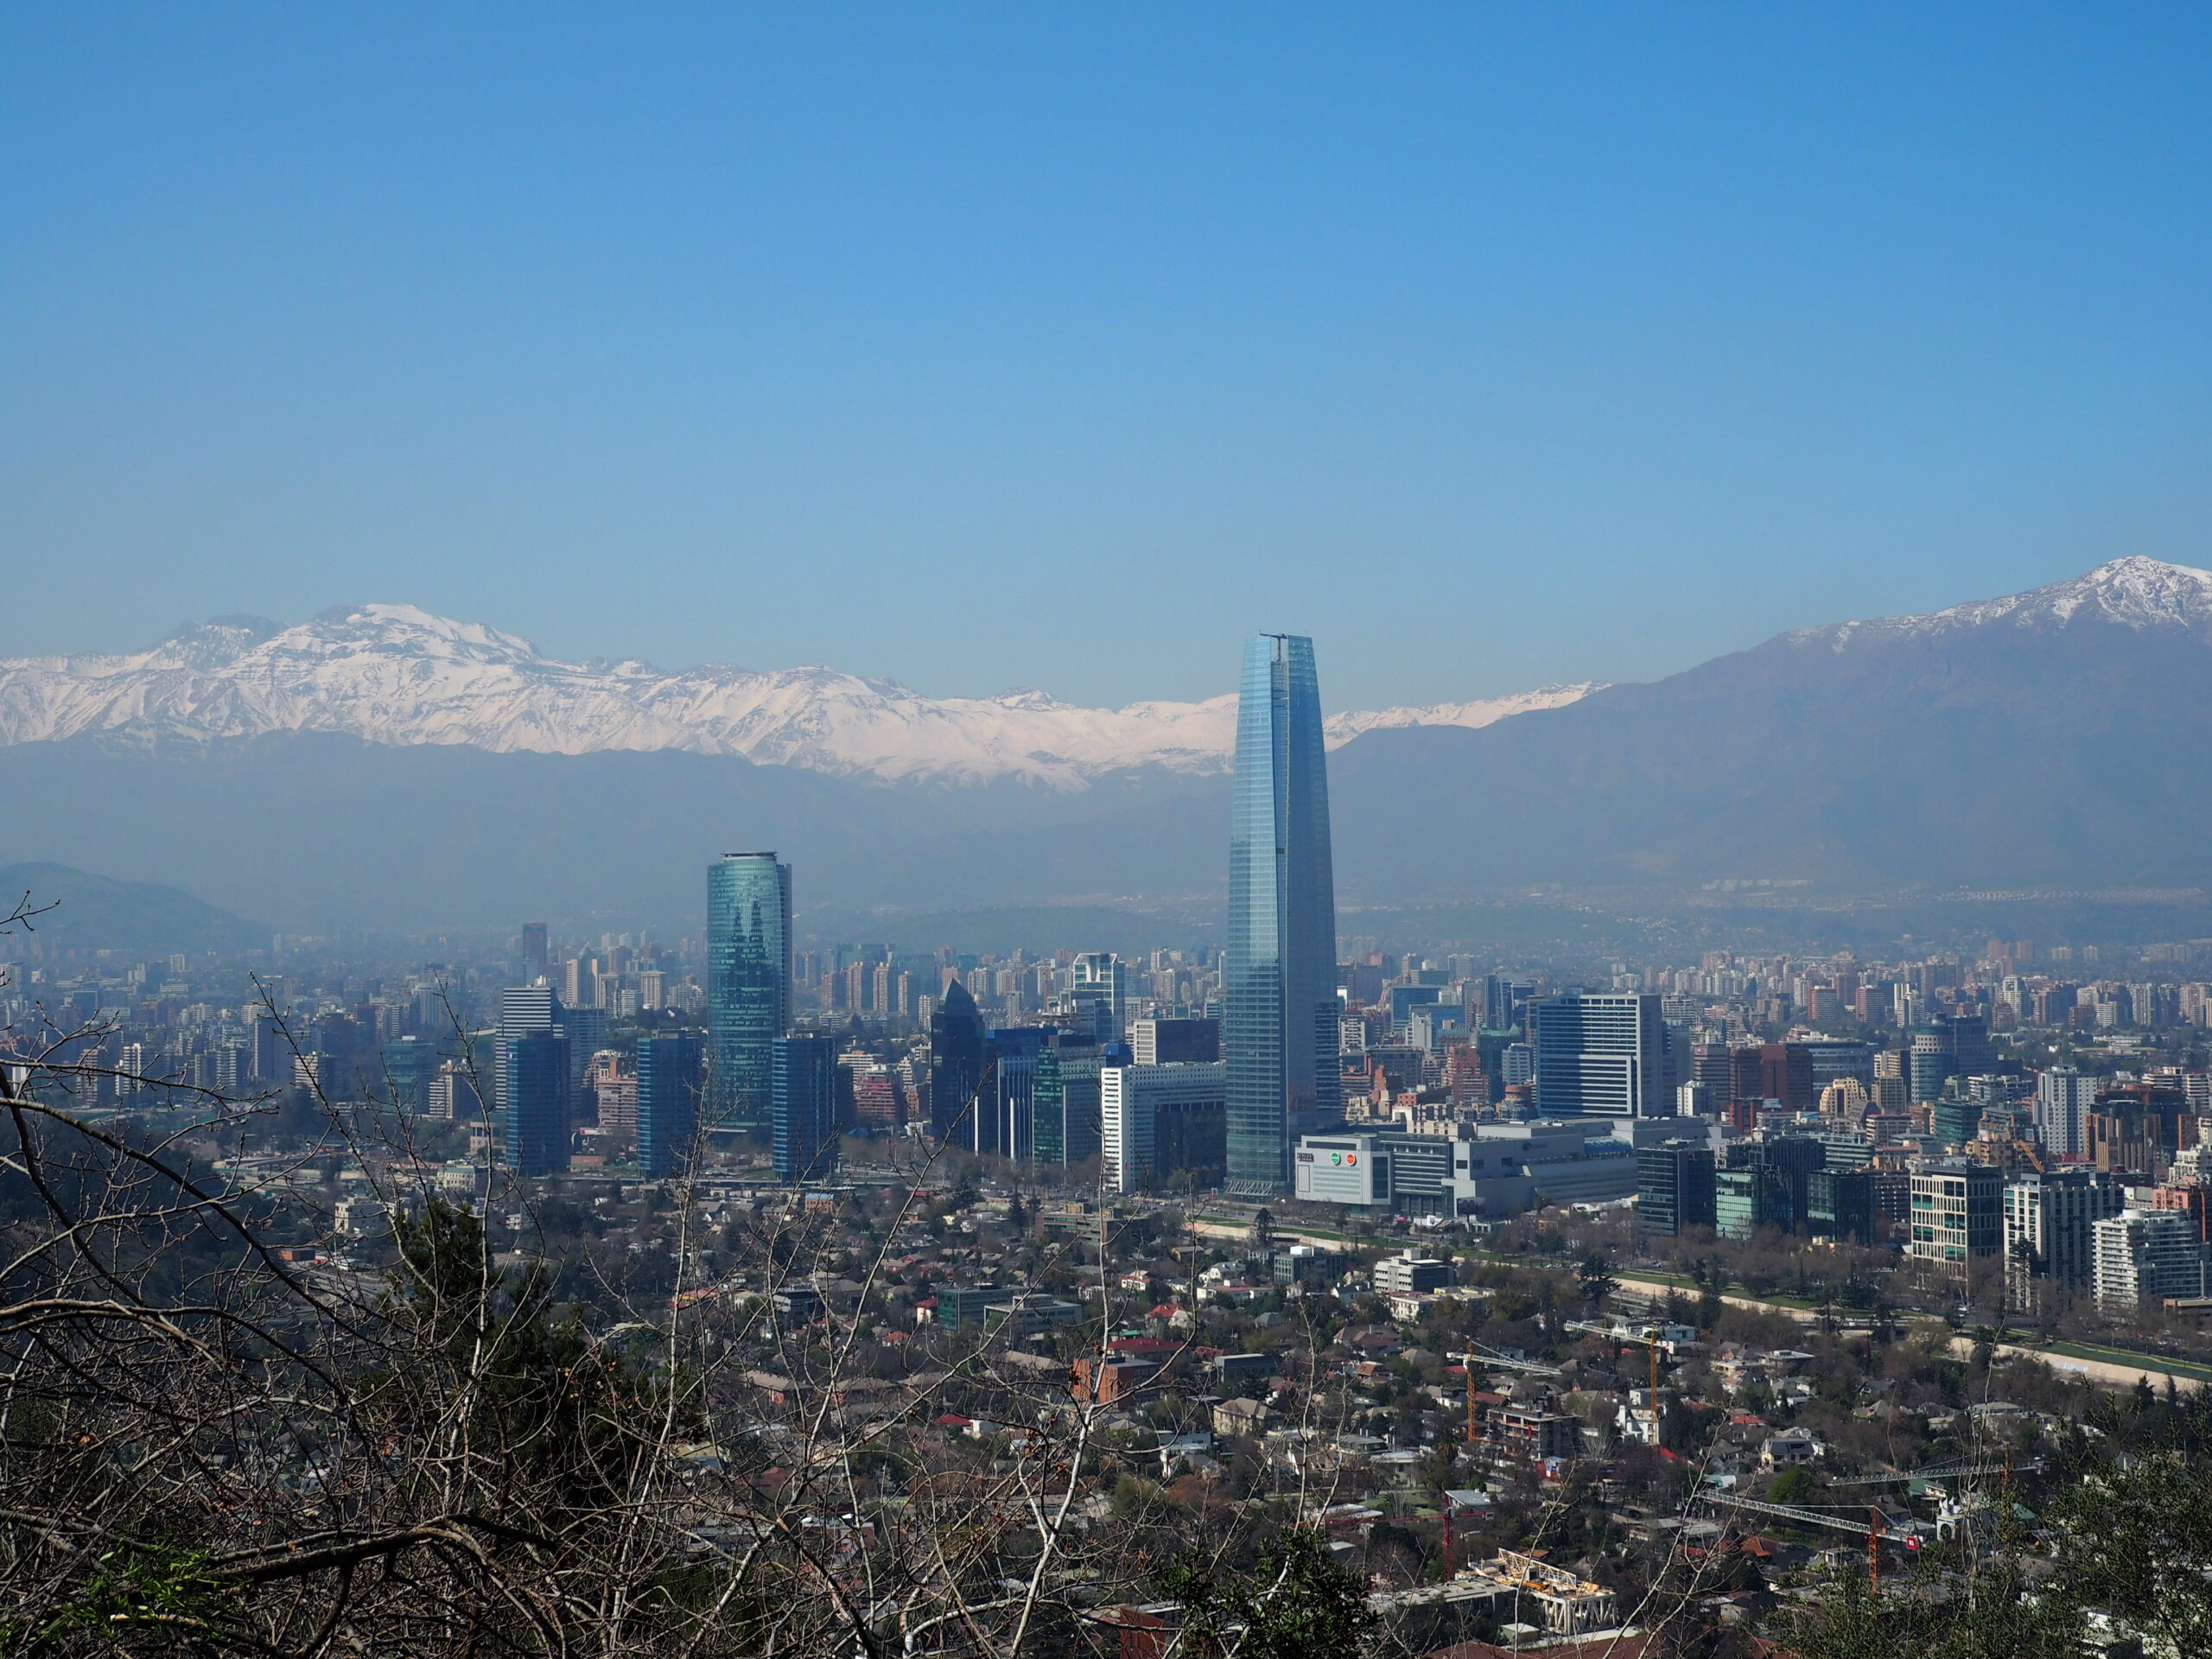 City view of Santiago de Chile